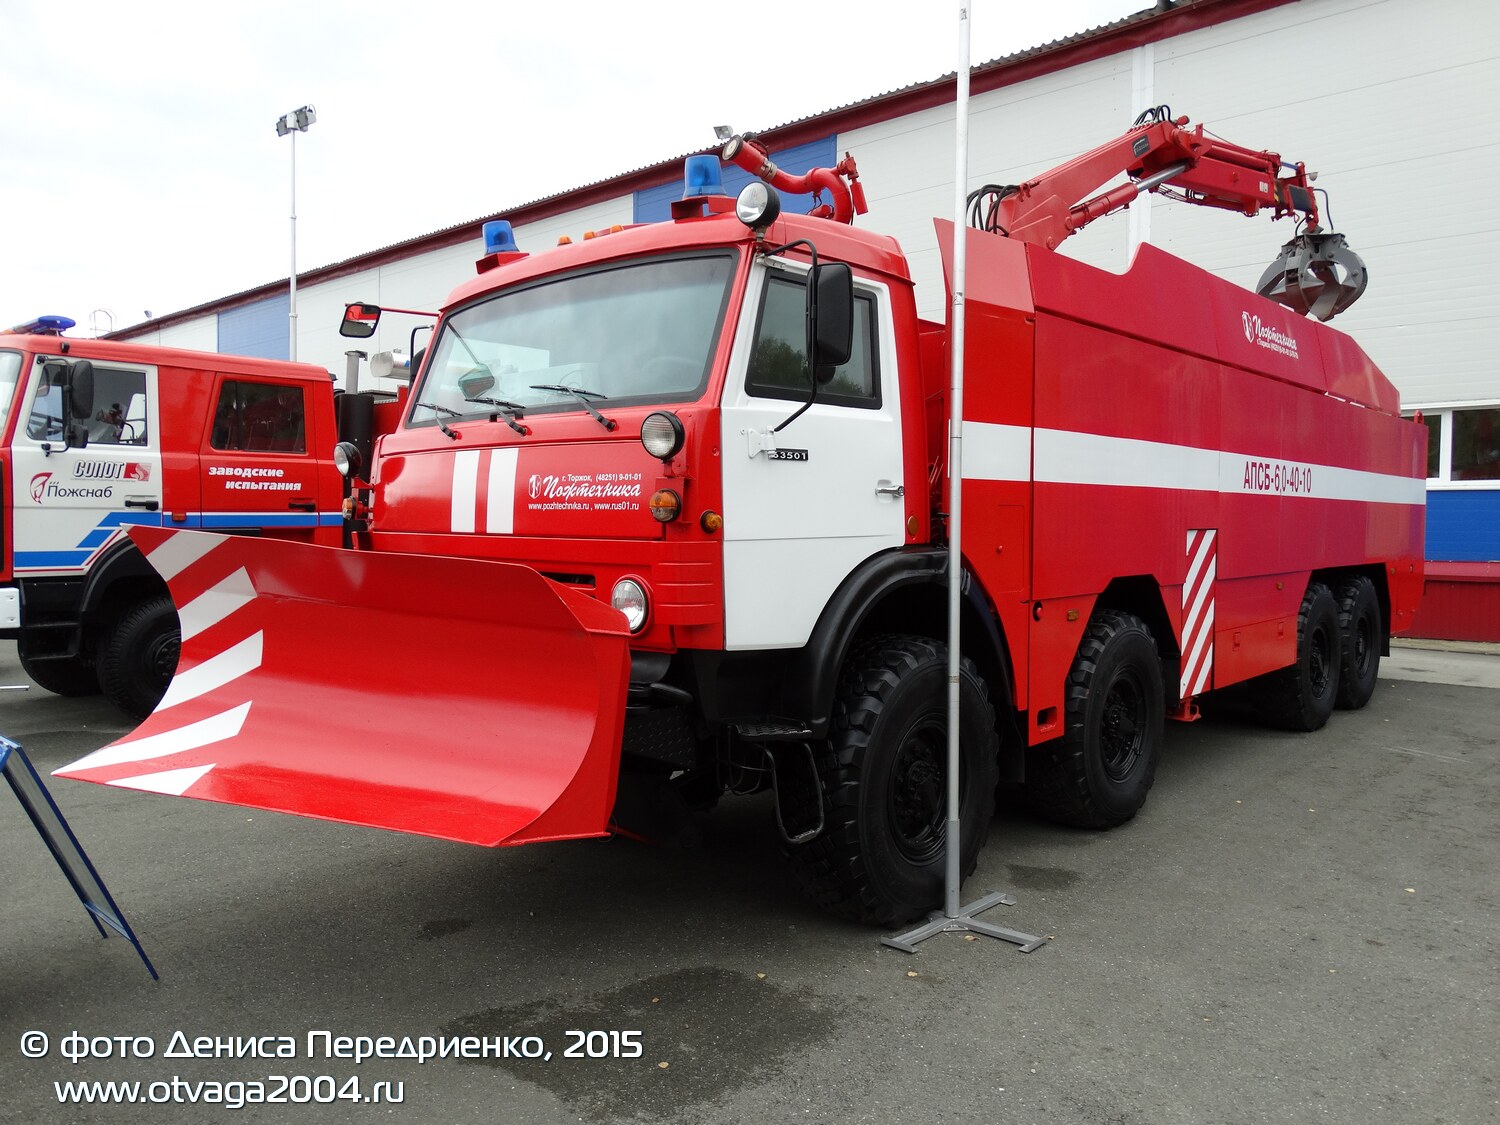 Пожарно-спасательный бронированный автомобиль АПСБ-6,0-40-10 - фотообзор